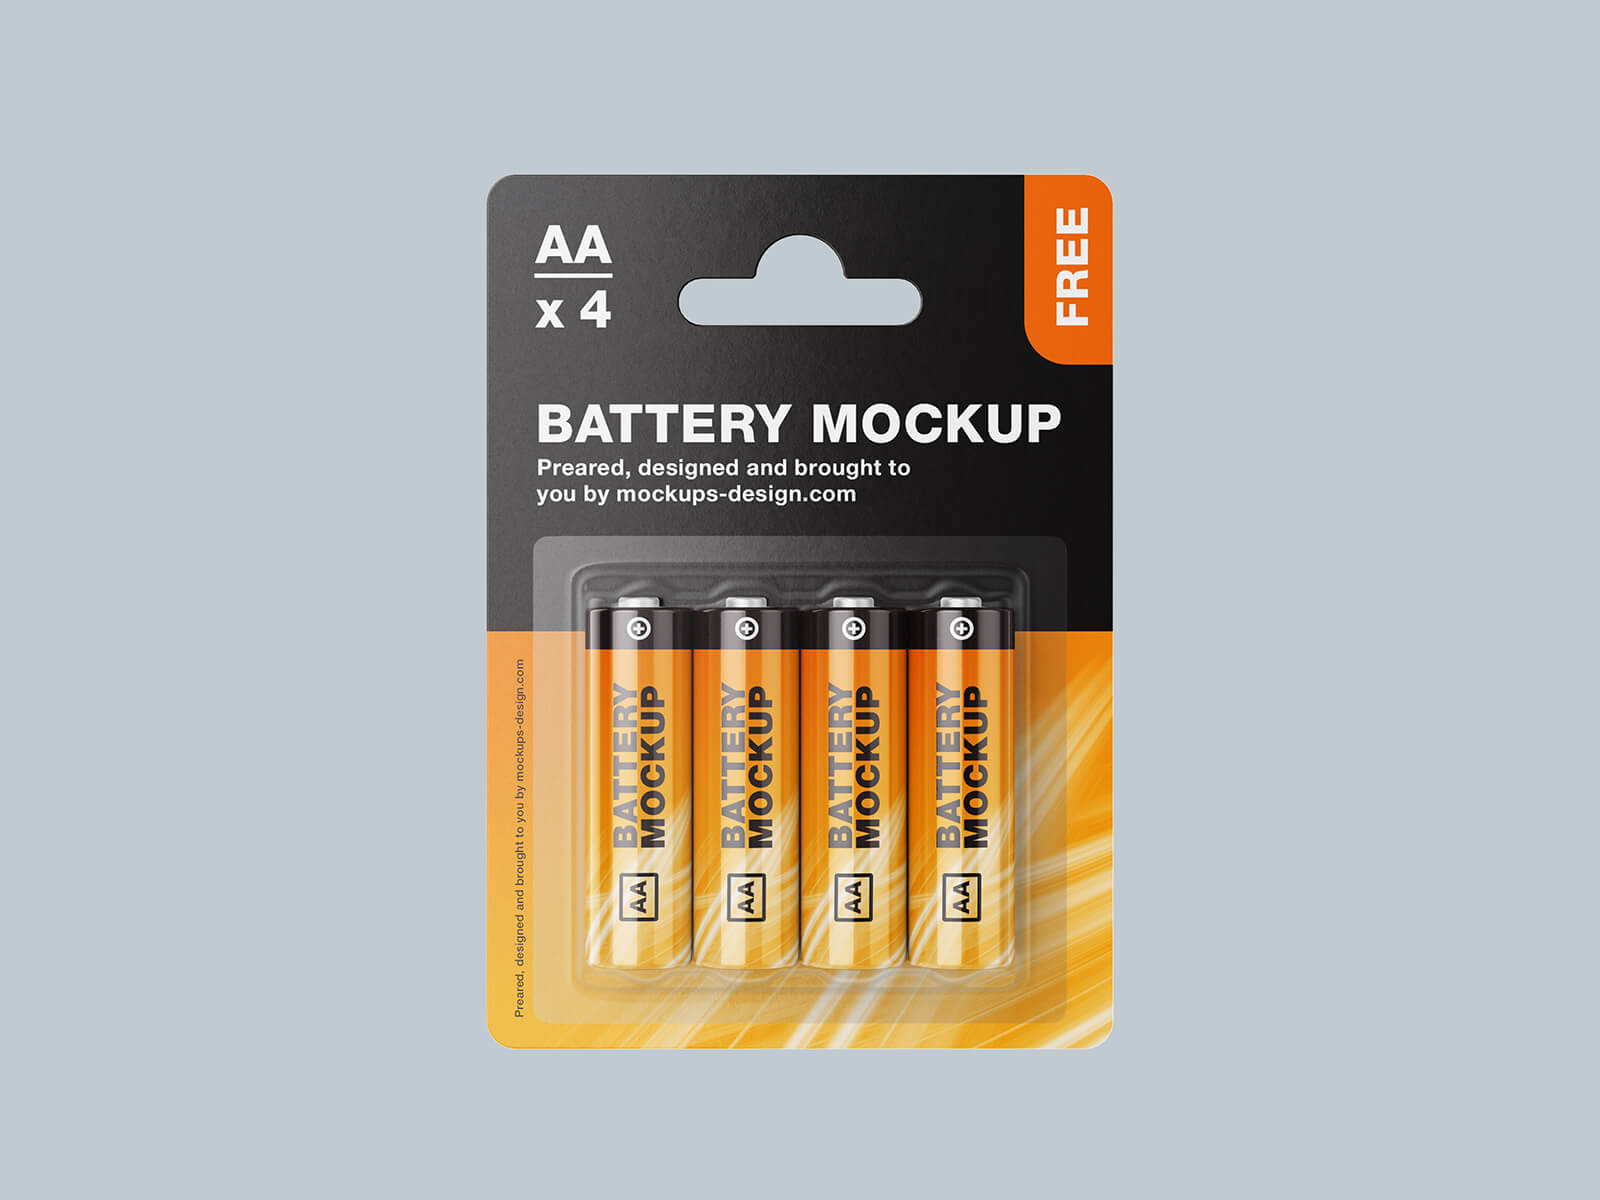 aa alkaline batteries